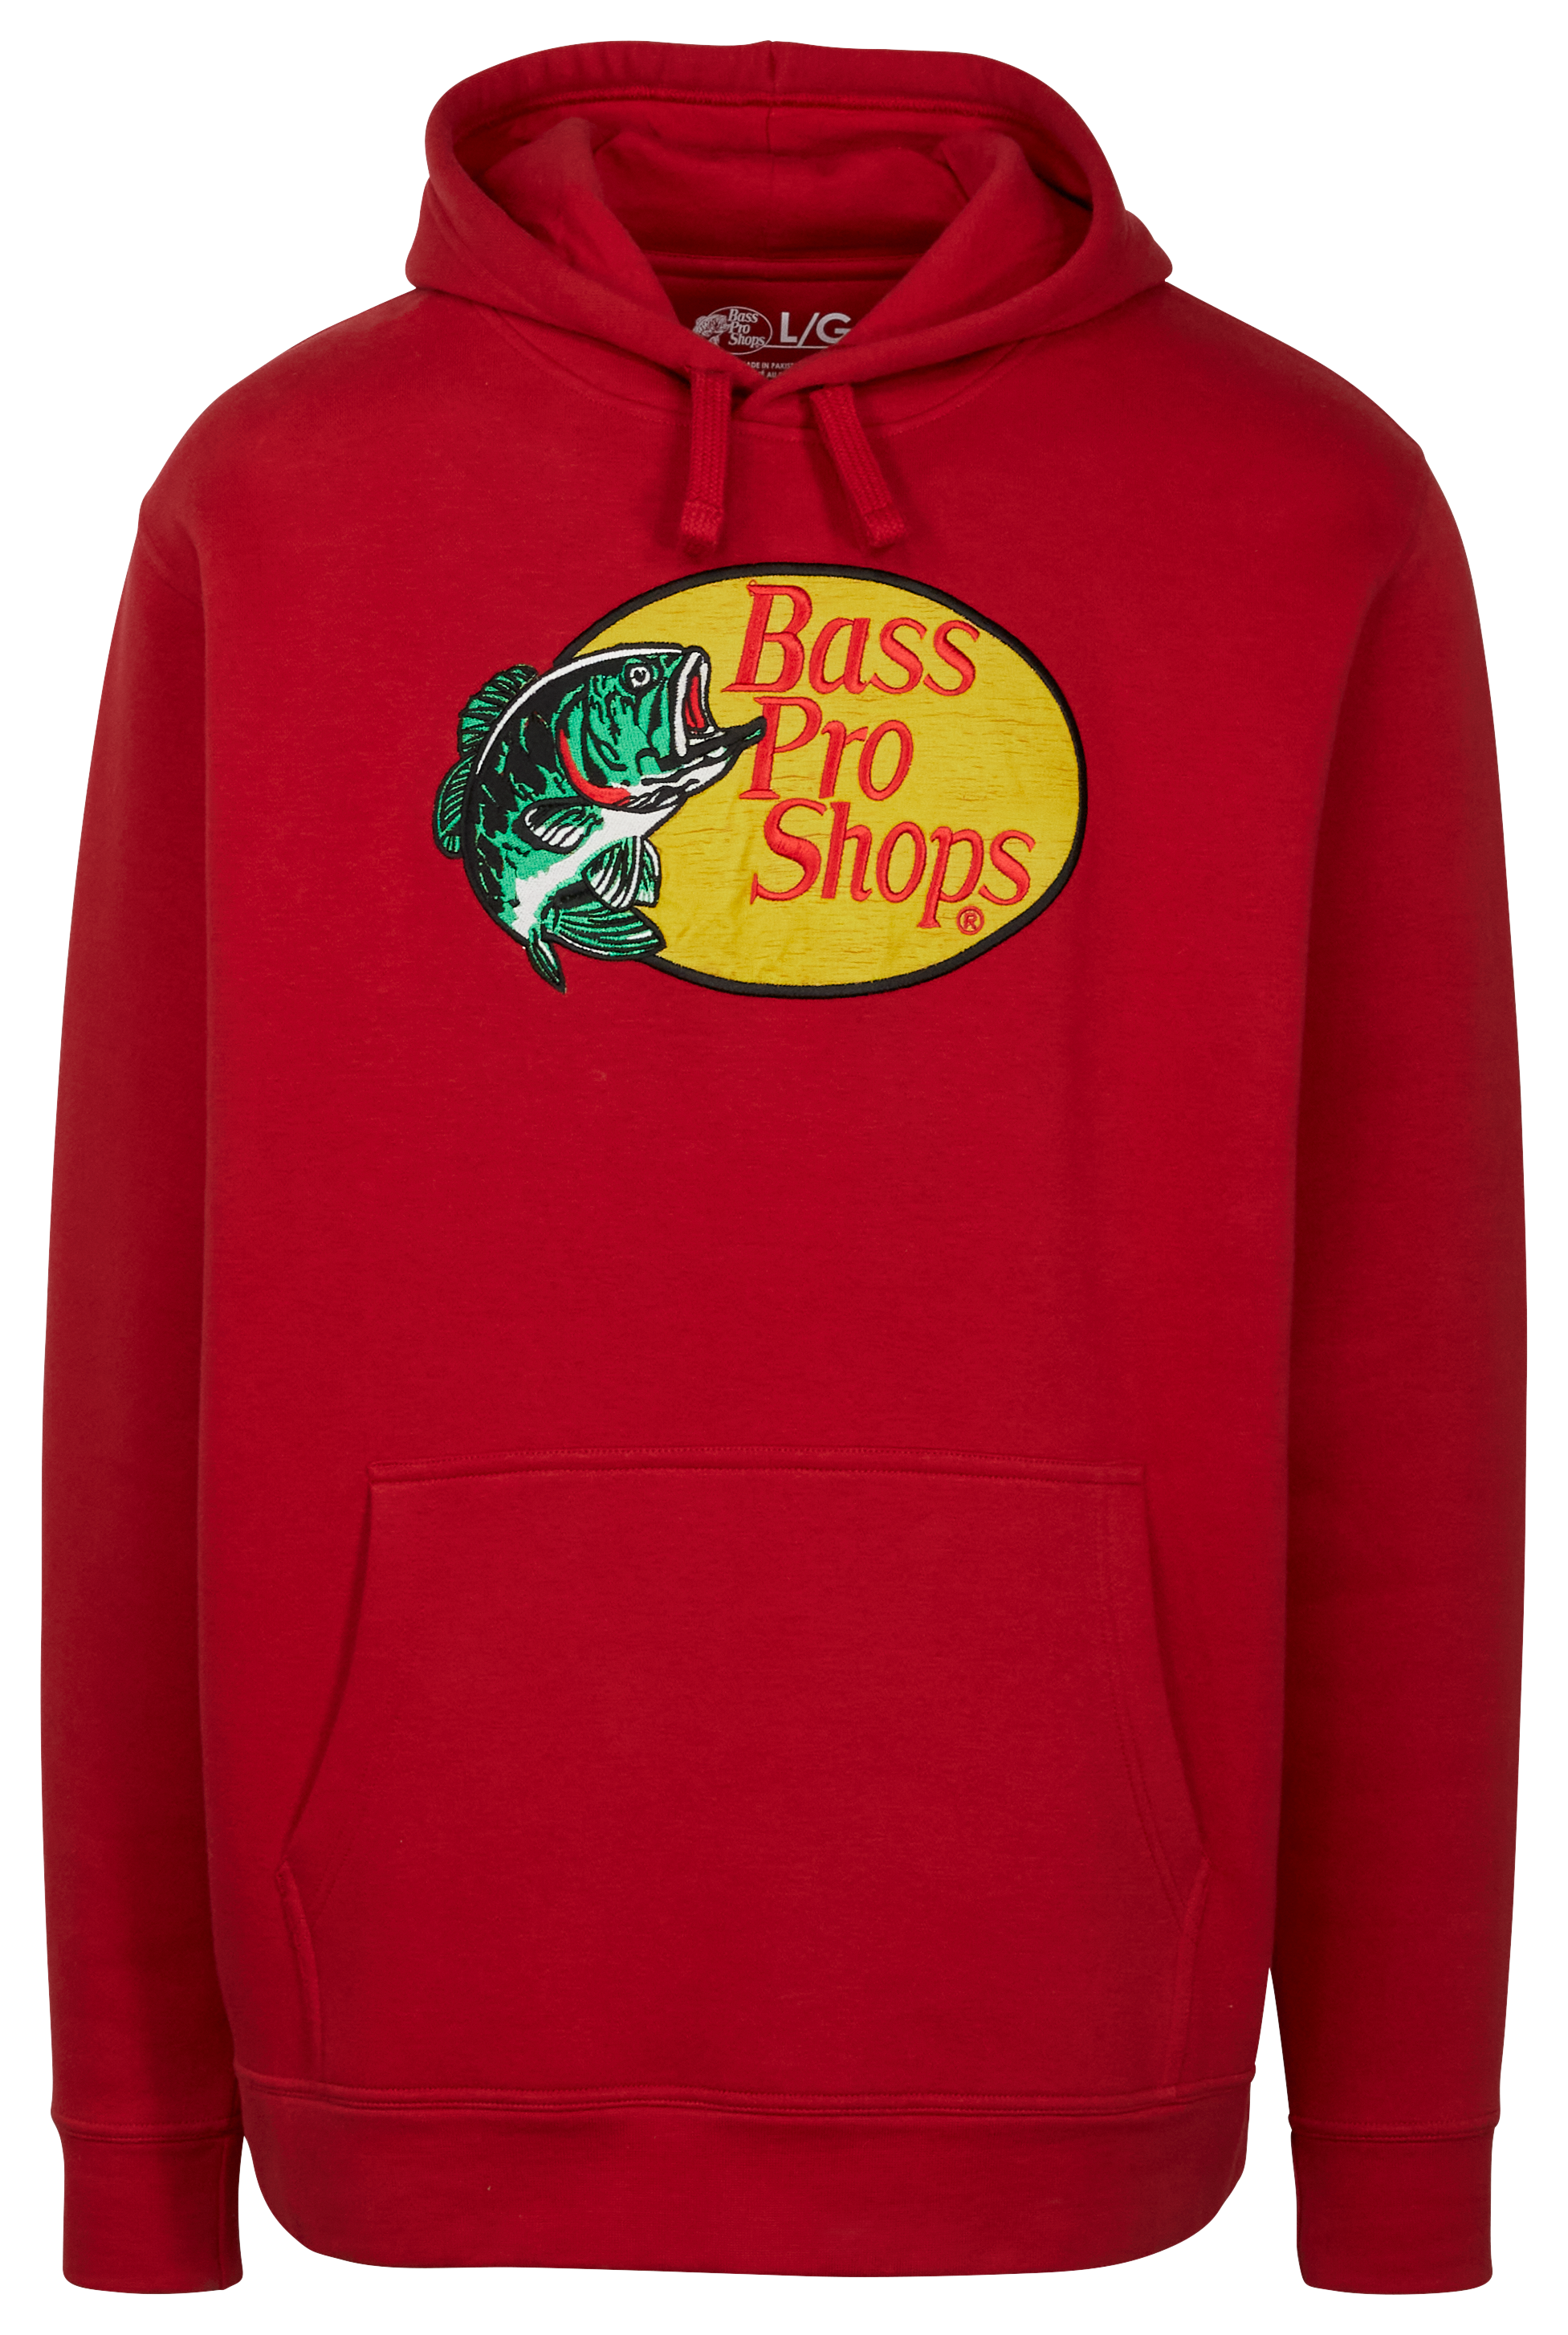 Bass Pro Shops Hoodies & Sweatshirts for Men for Sale, Shop Men's Athletic  Clothes